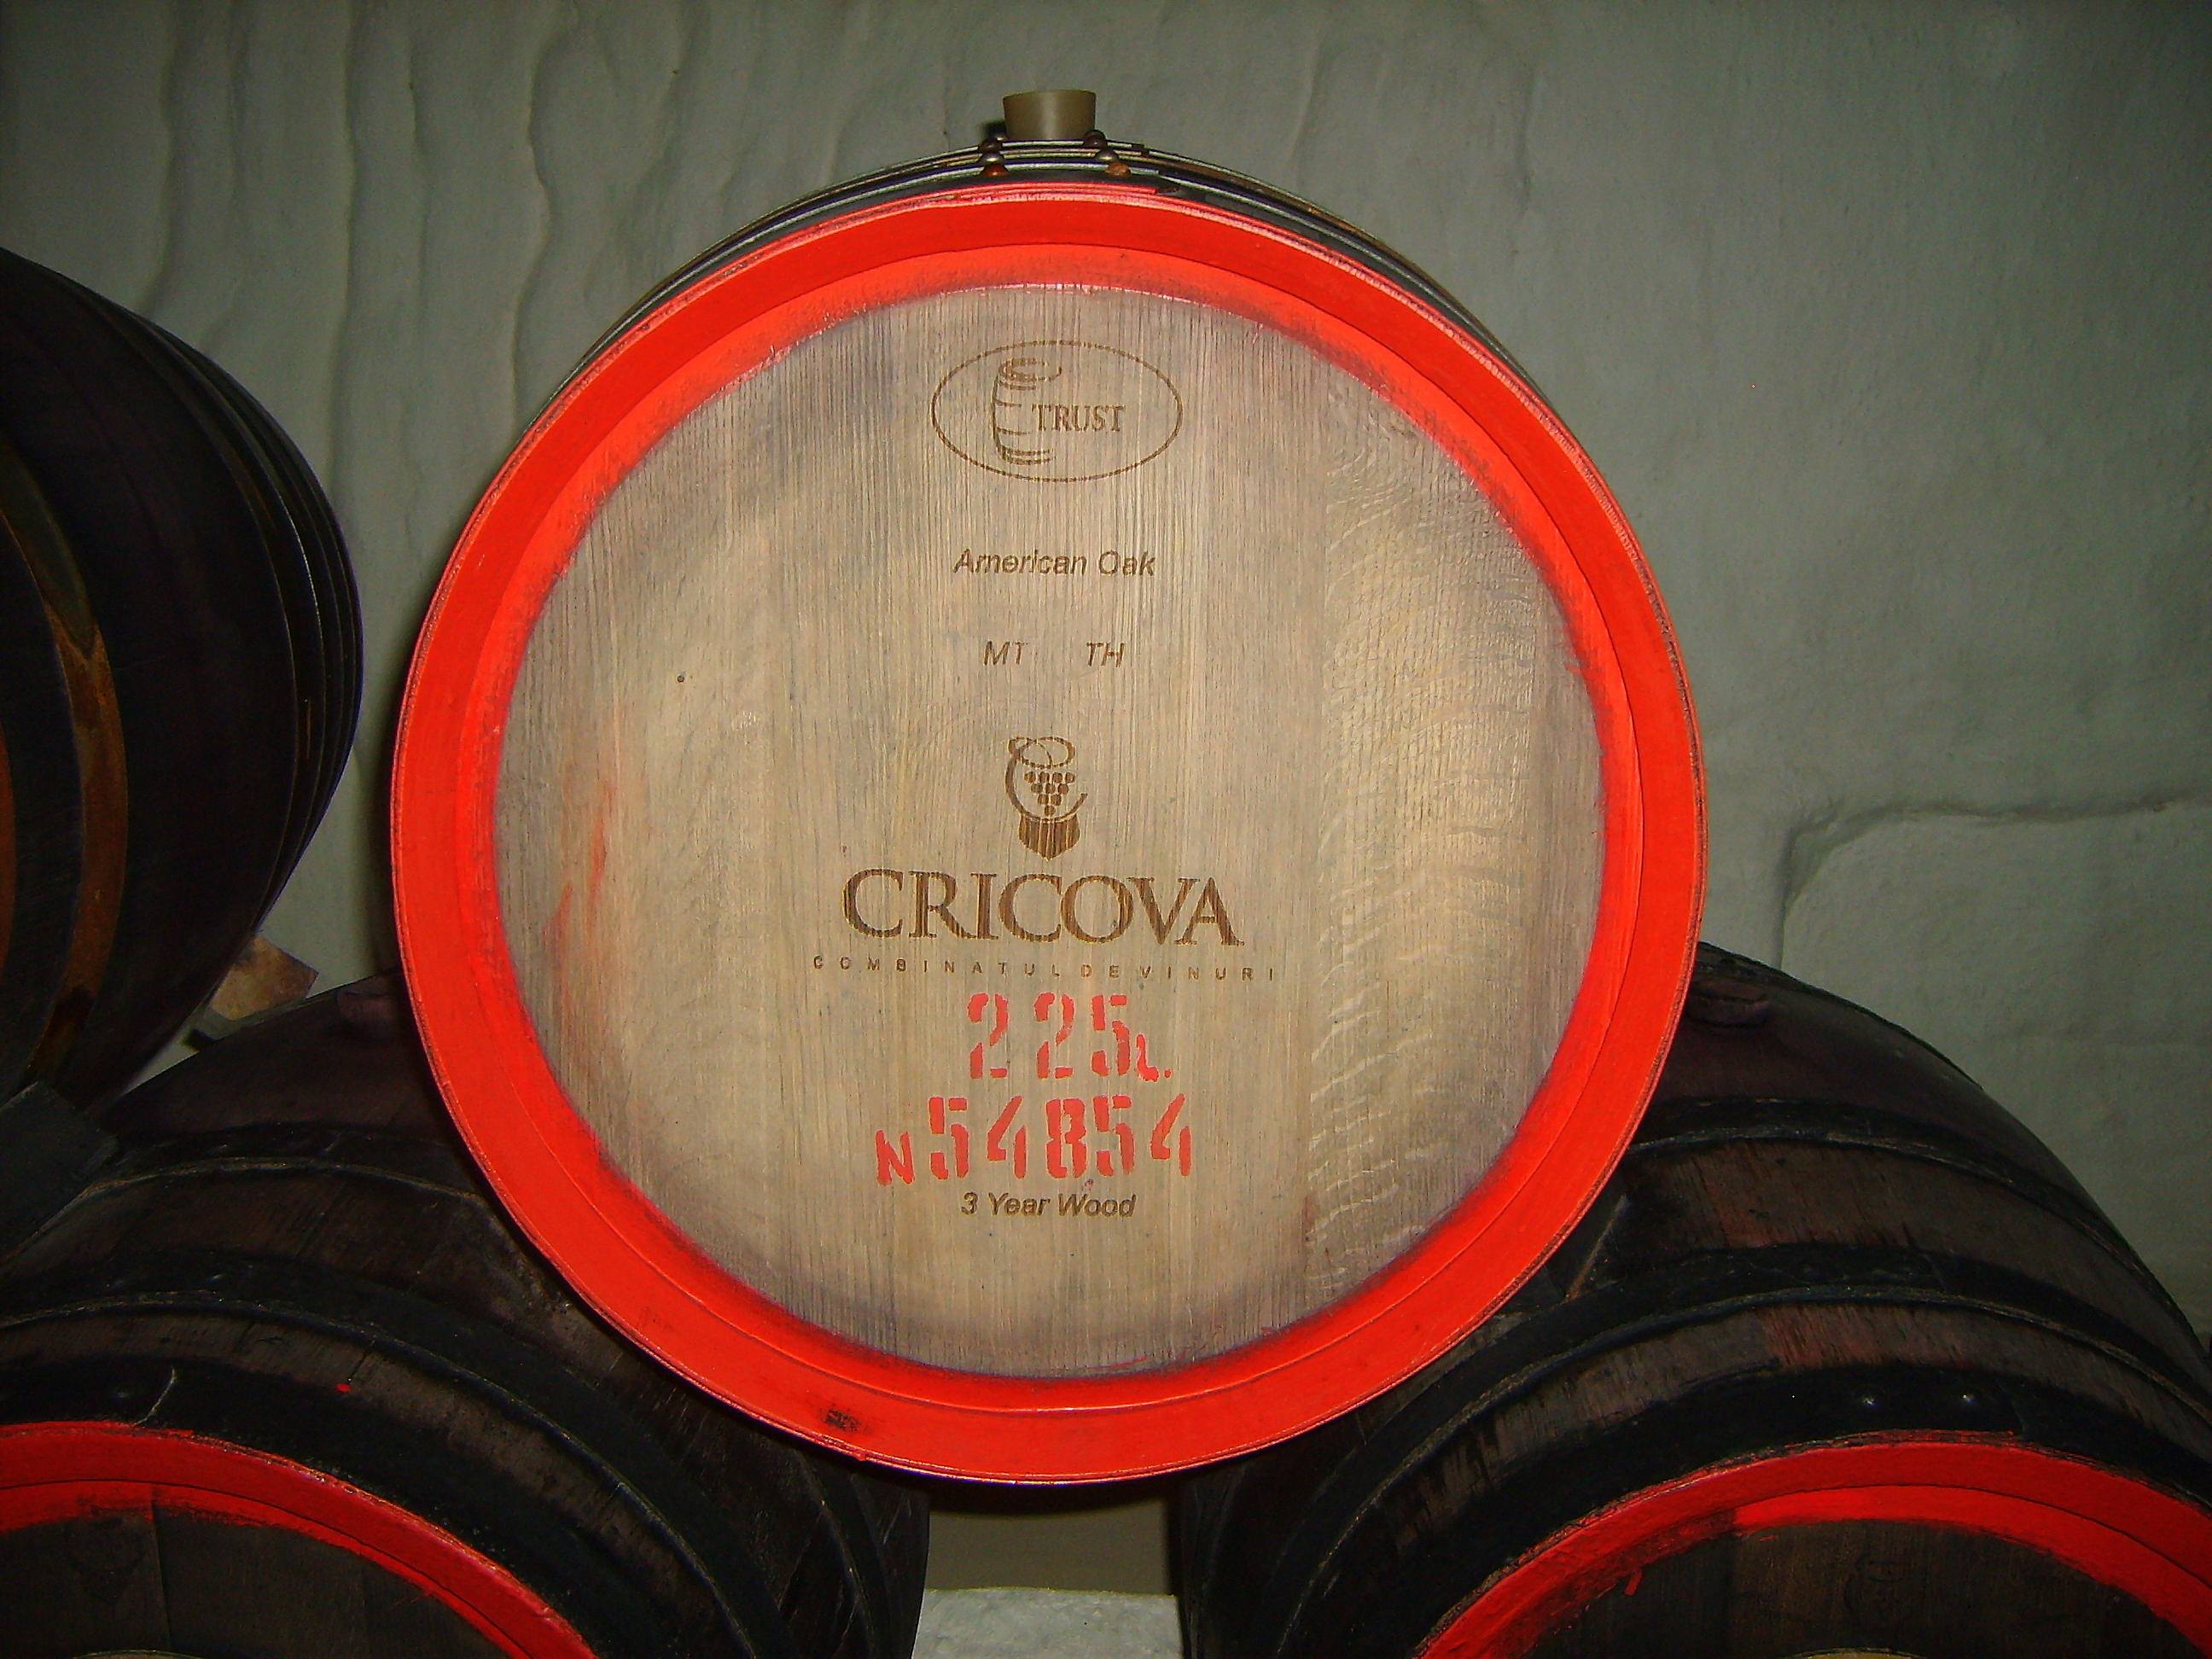 Piwnica wina - Cricova, Mołdawia